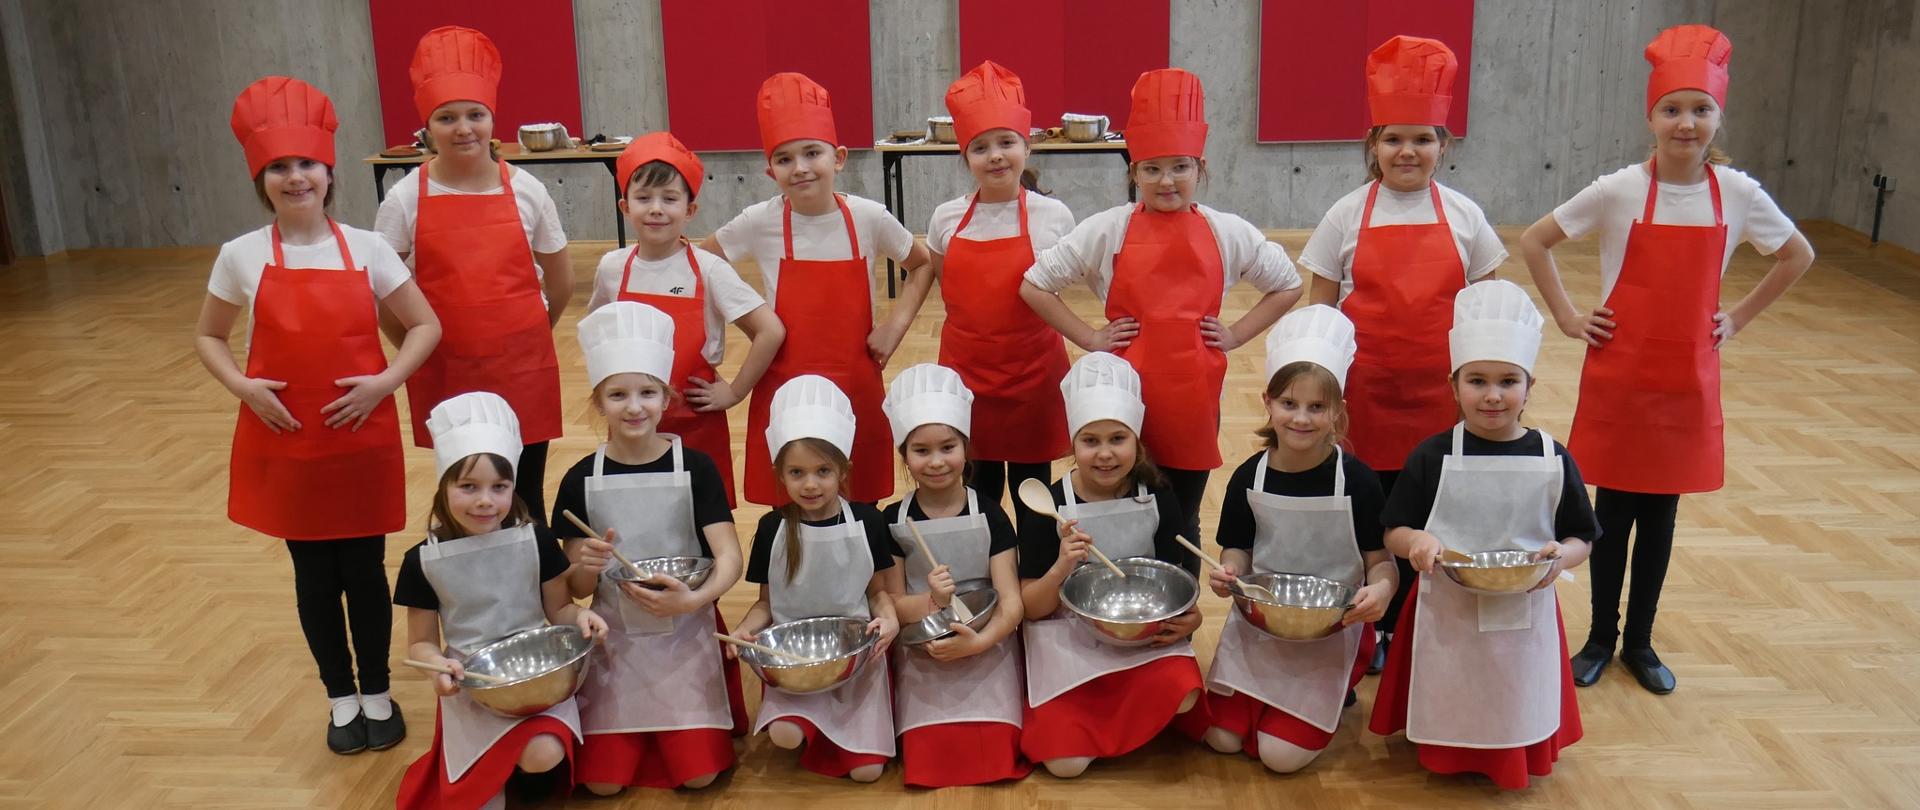 Grupa dzieci w czerwonych kucharskich czapkach i fartuszkach siedzą i stoją na podłodze sali koncertowej szkoły muzycznej, w rękach trzymają miski i łyżki , w tle stoliki z instrumentami muzycznymi